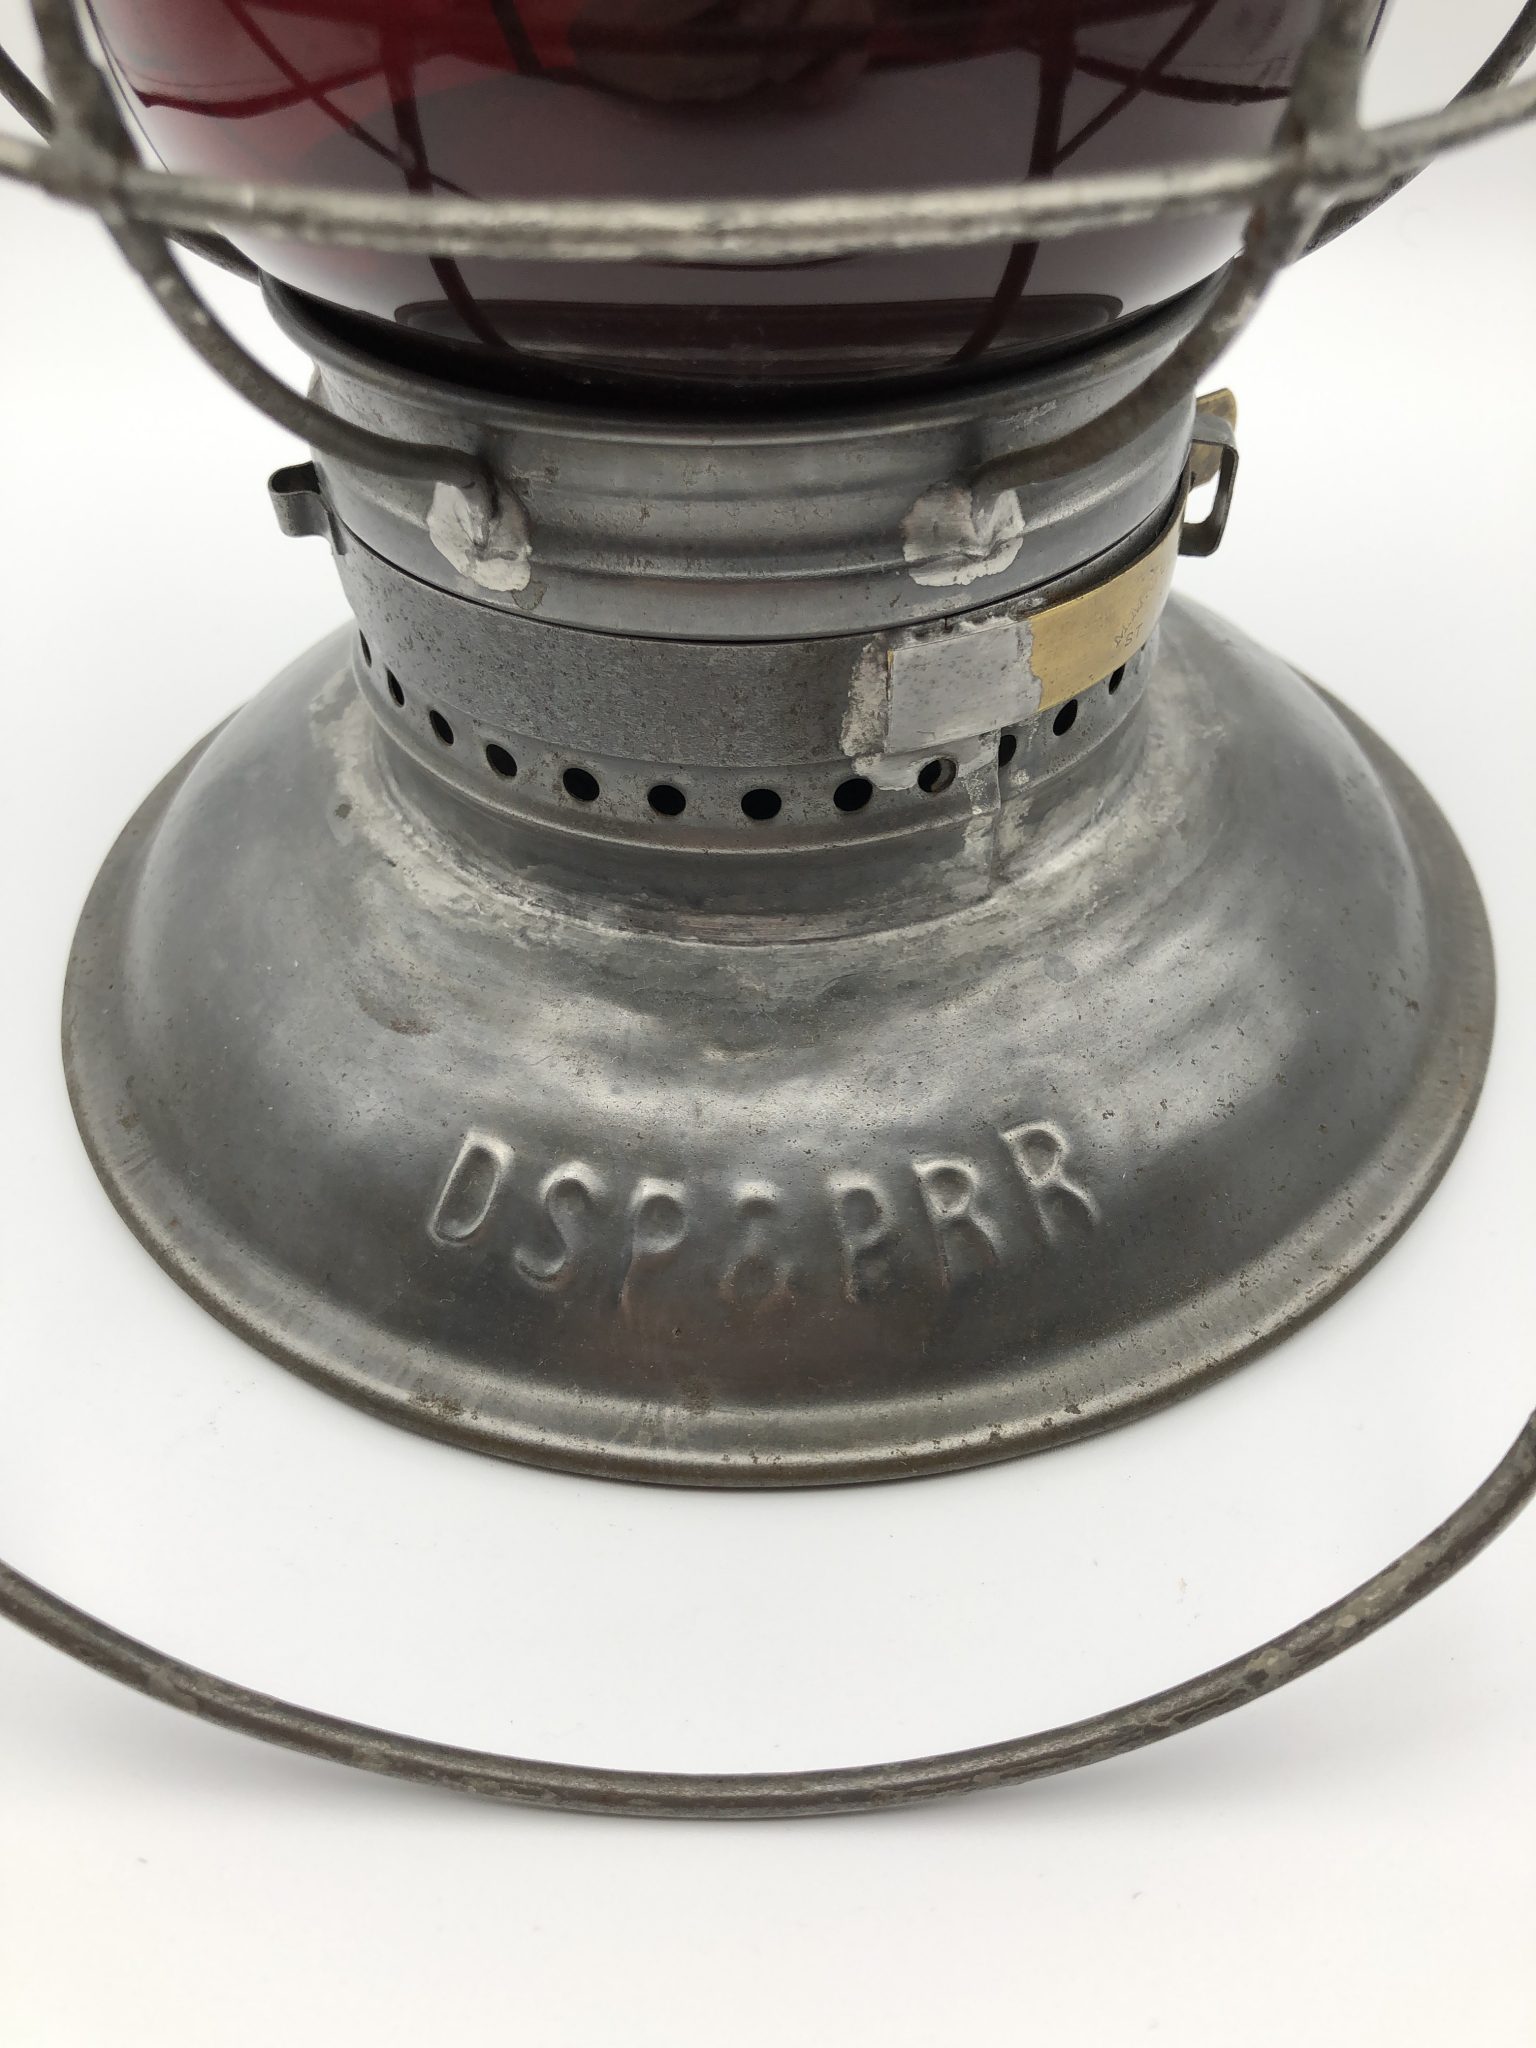 DSP&PRR Railroad Lantern